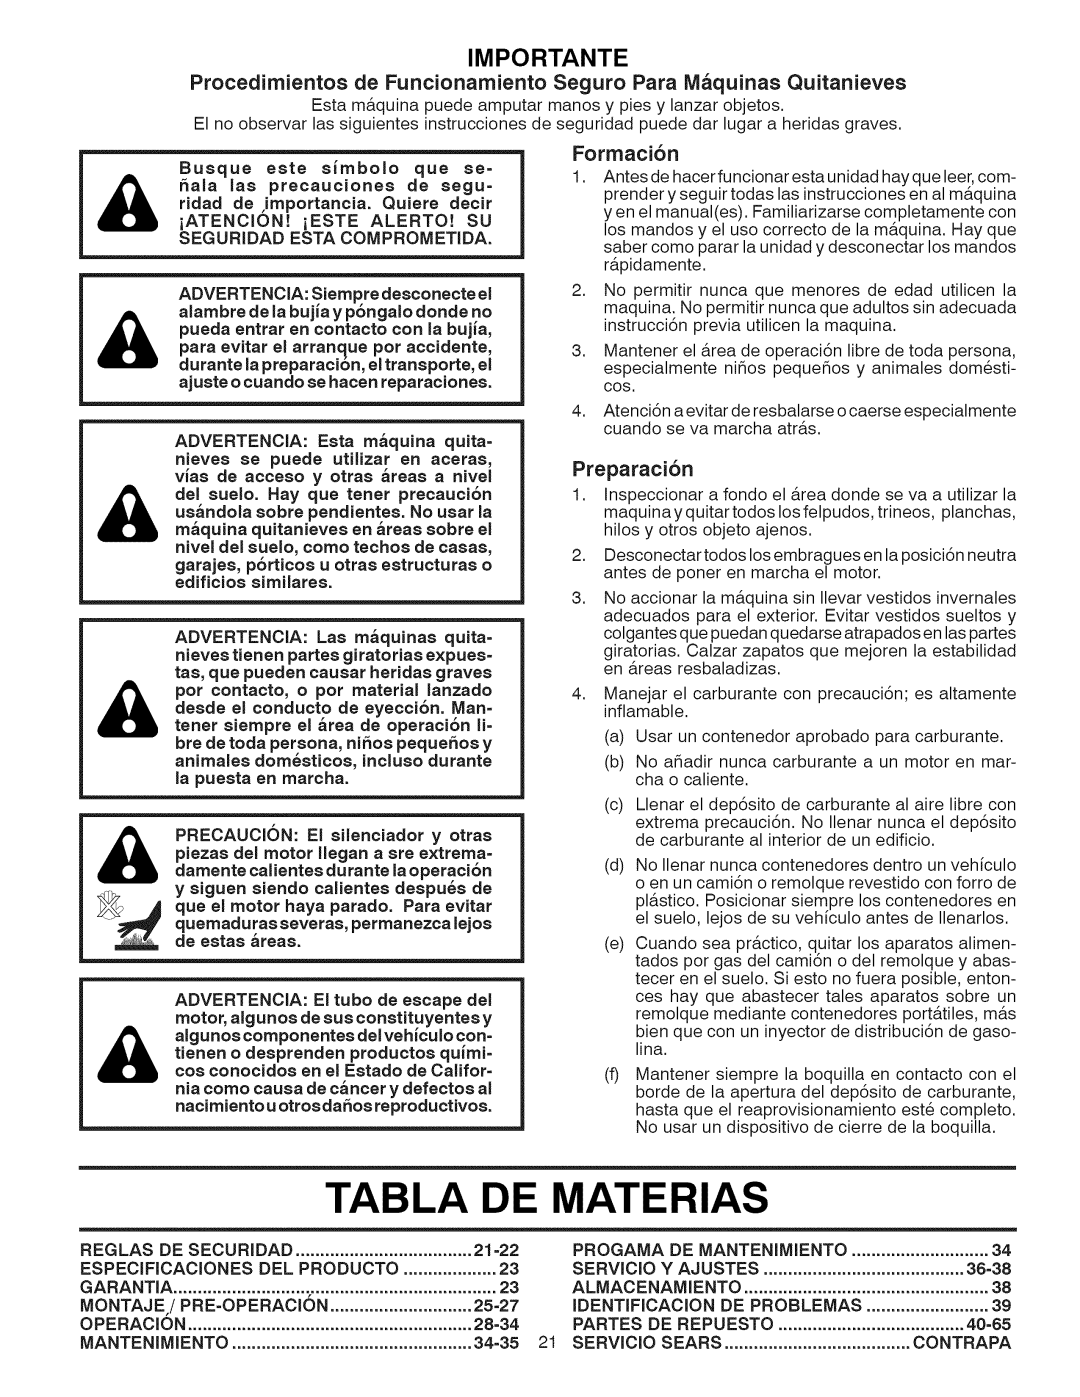 Craftsman 917.881064 Tabla De Materias, Importante, Formacibn, Preparaci6n, ridad de ,importancia. Quiere decir, Operacion 